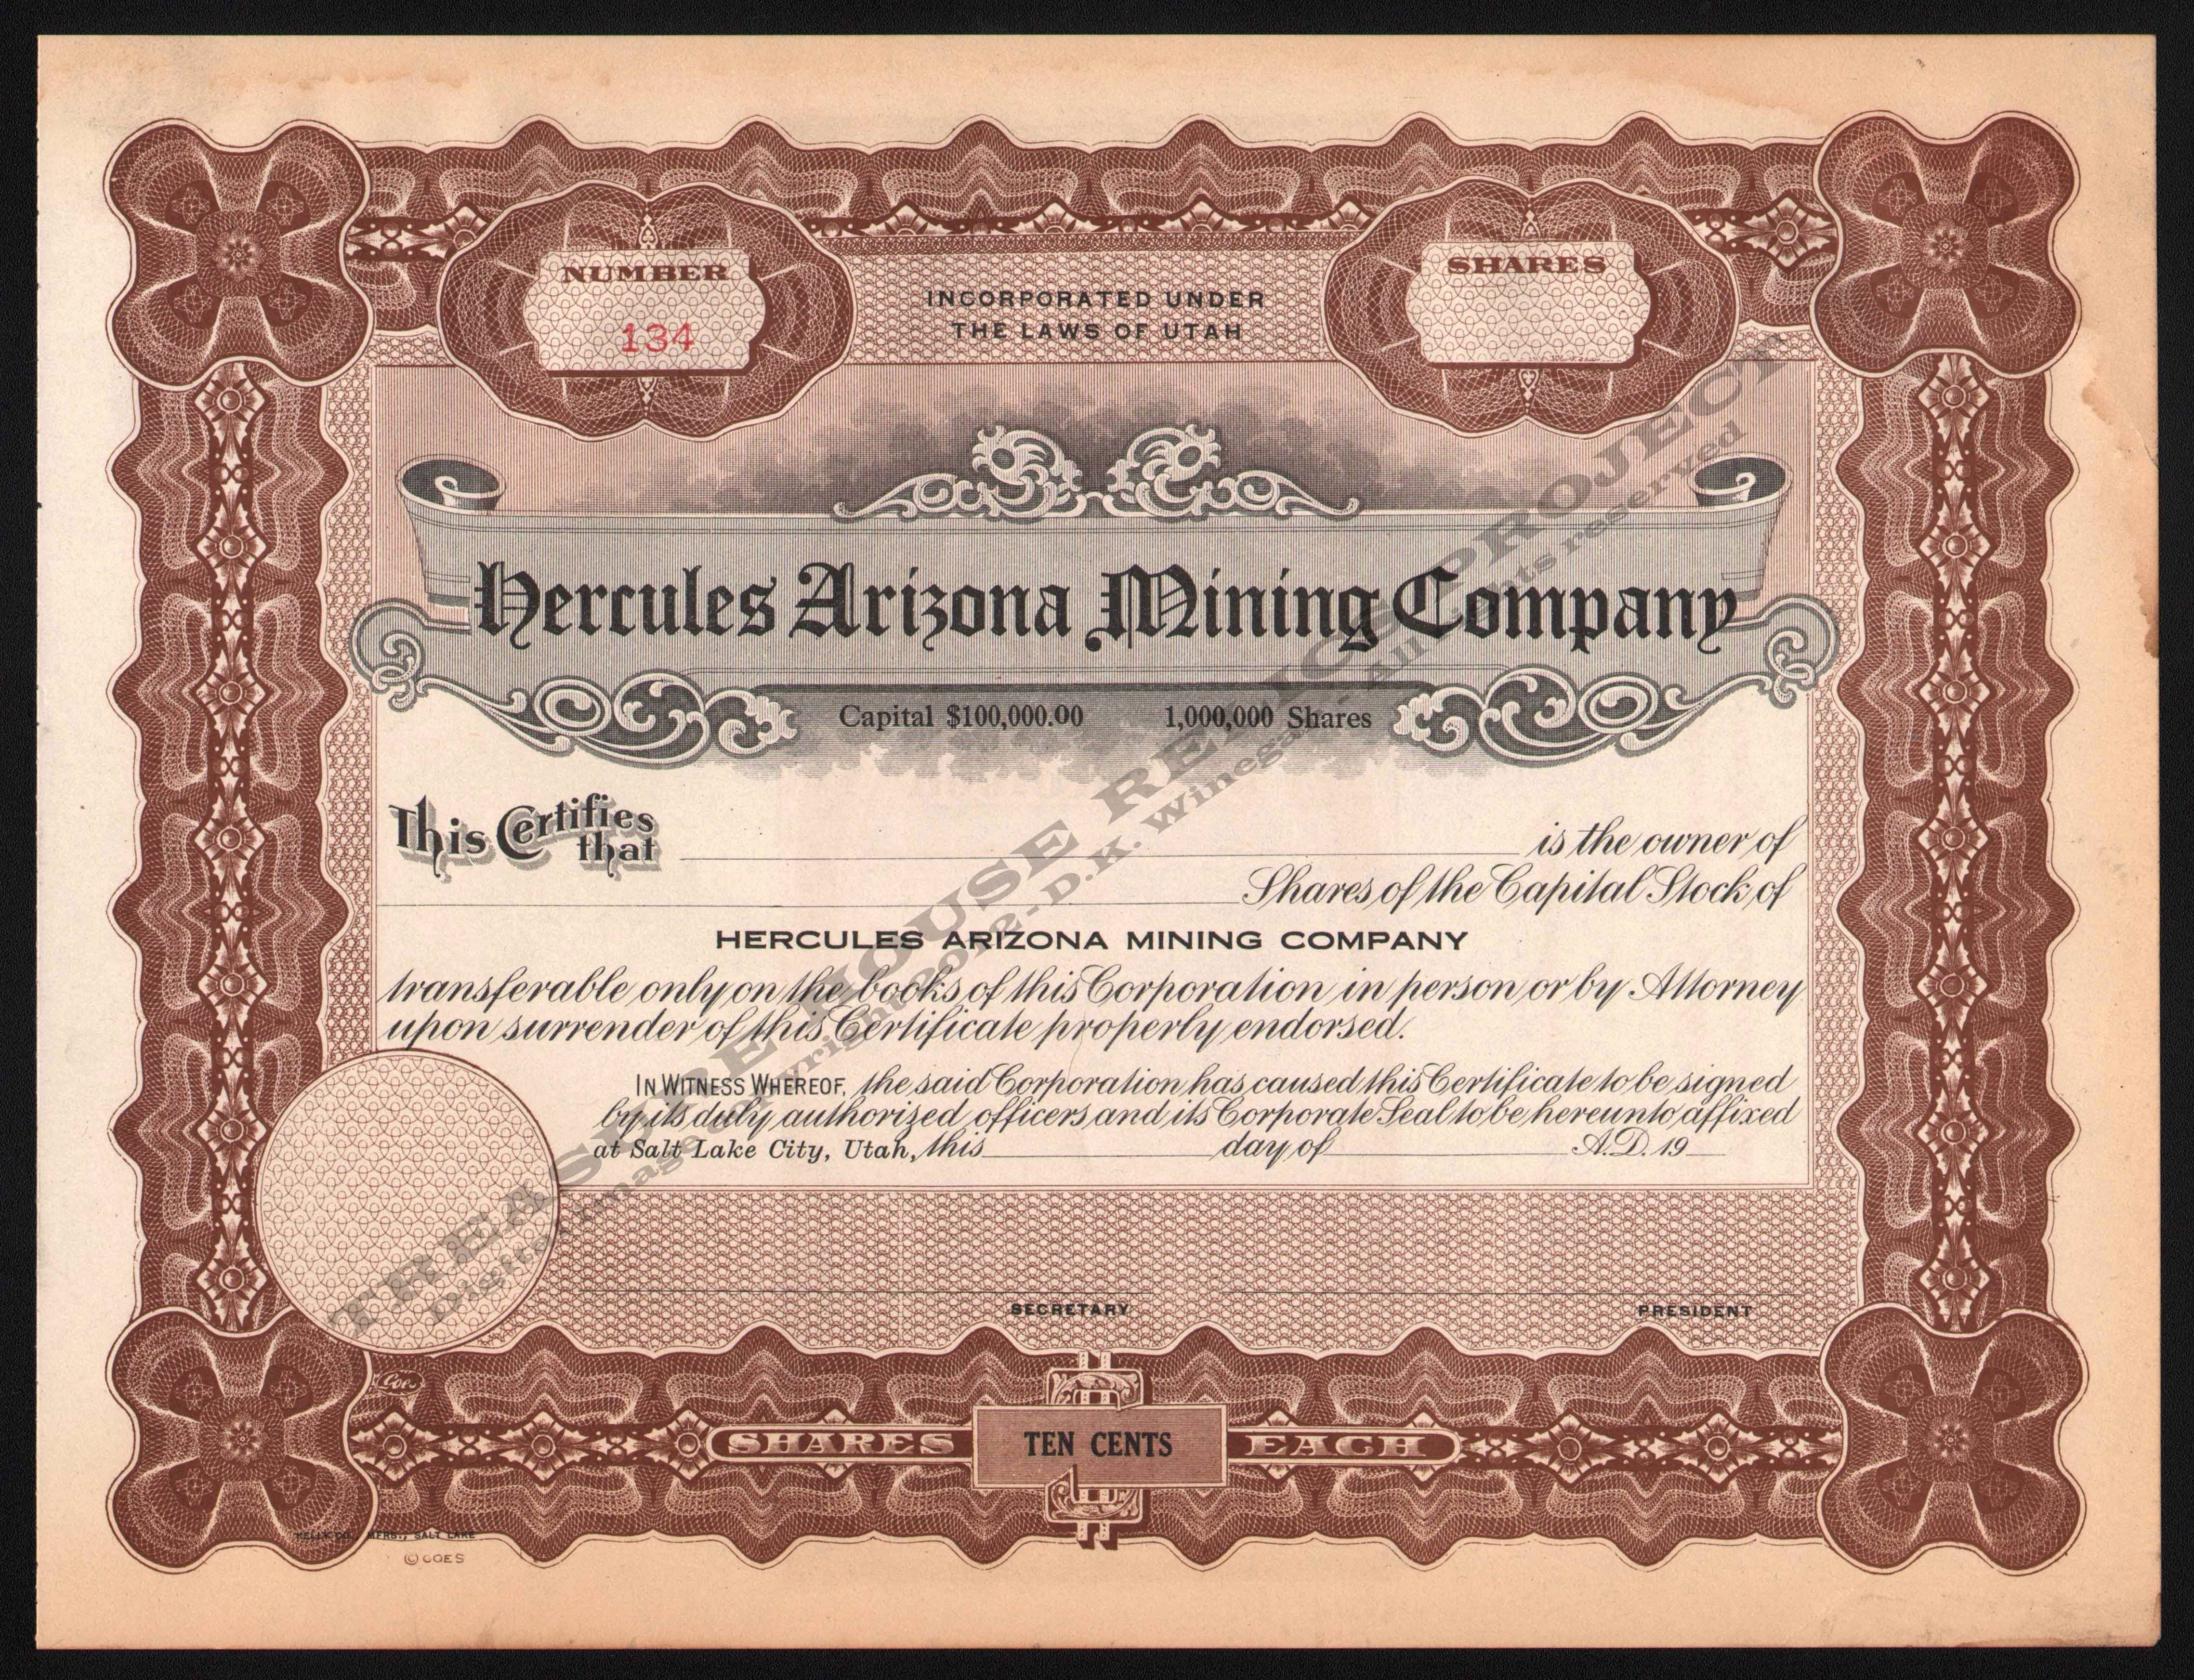 Corporate Bond Certificate Template 11 Inspirational